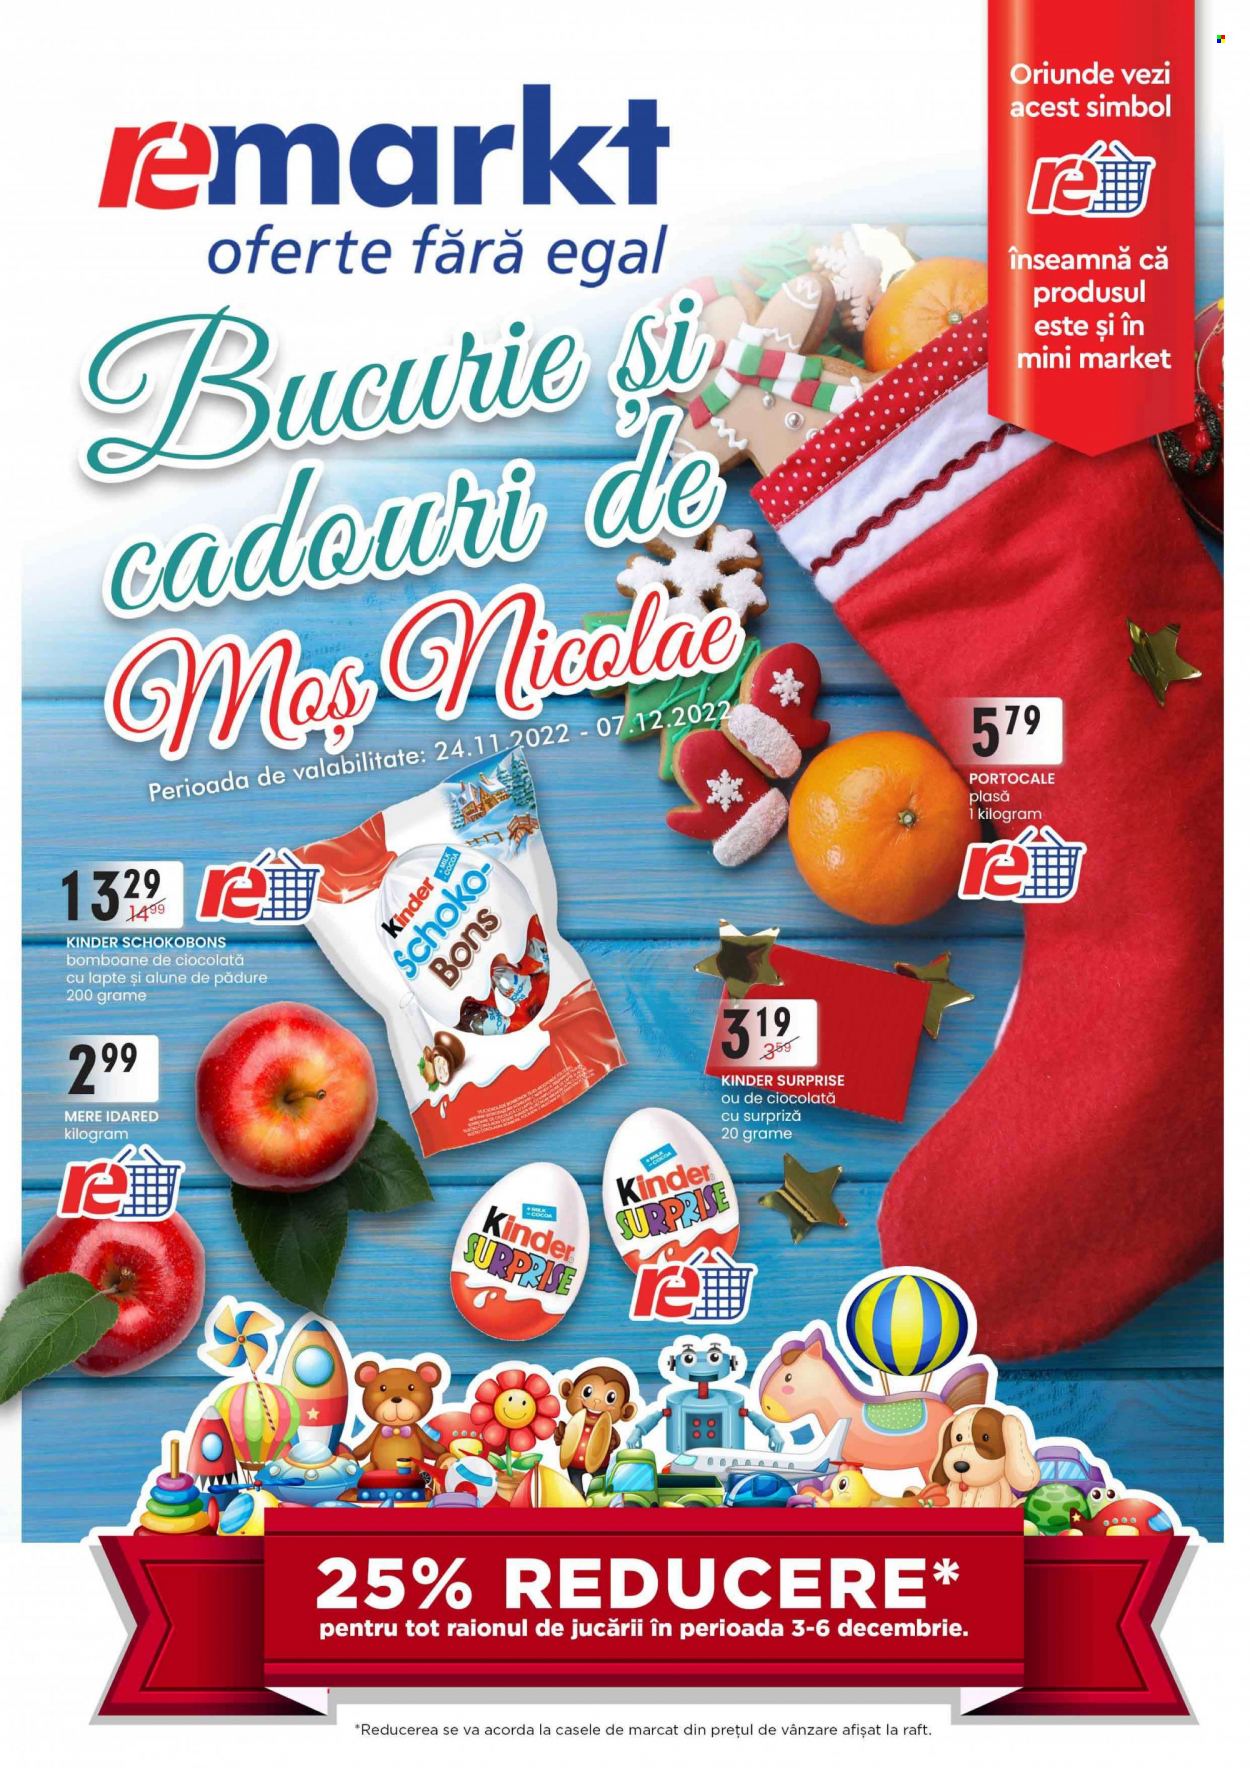 thumbnail - Cataloage remarkt - 24.11.2022 - 07.12.2022 - Produse în vânzare - mere, bomboane, Kinder. Pagina 1.